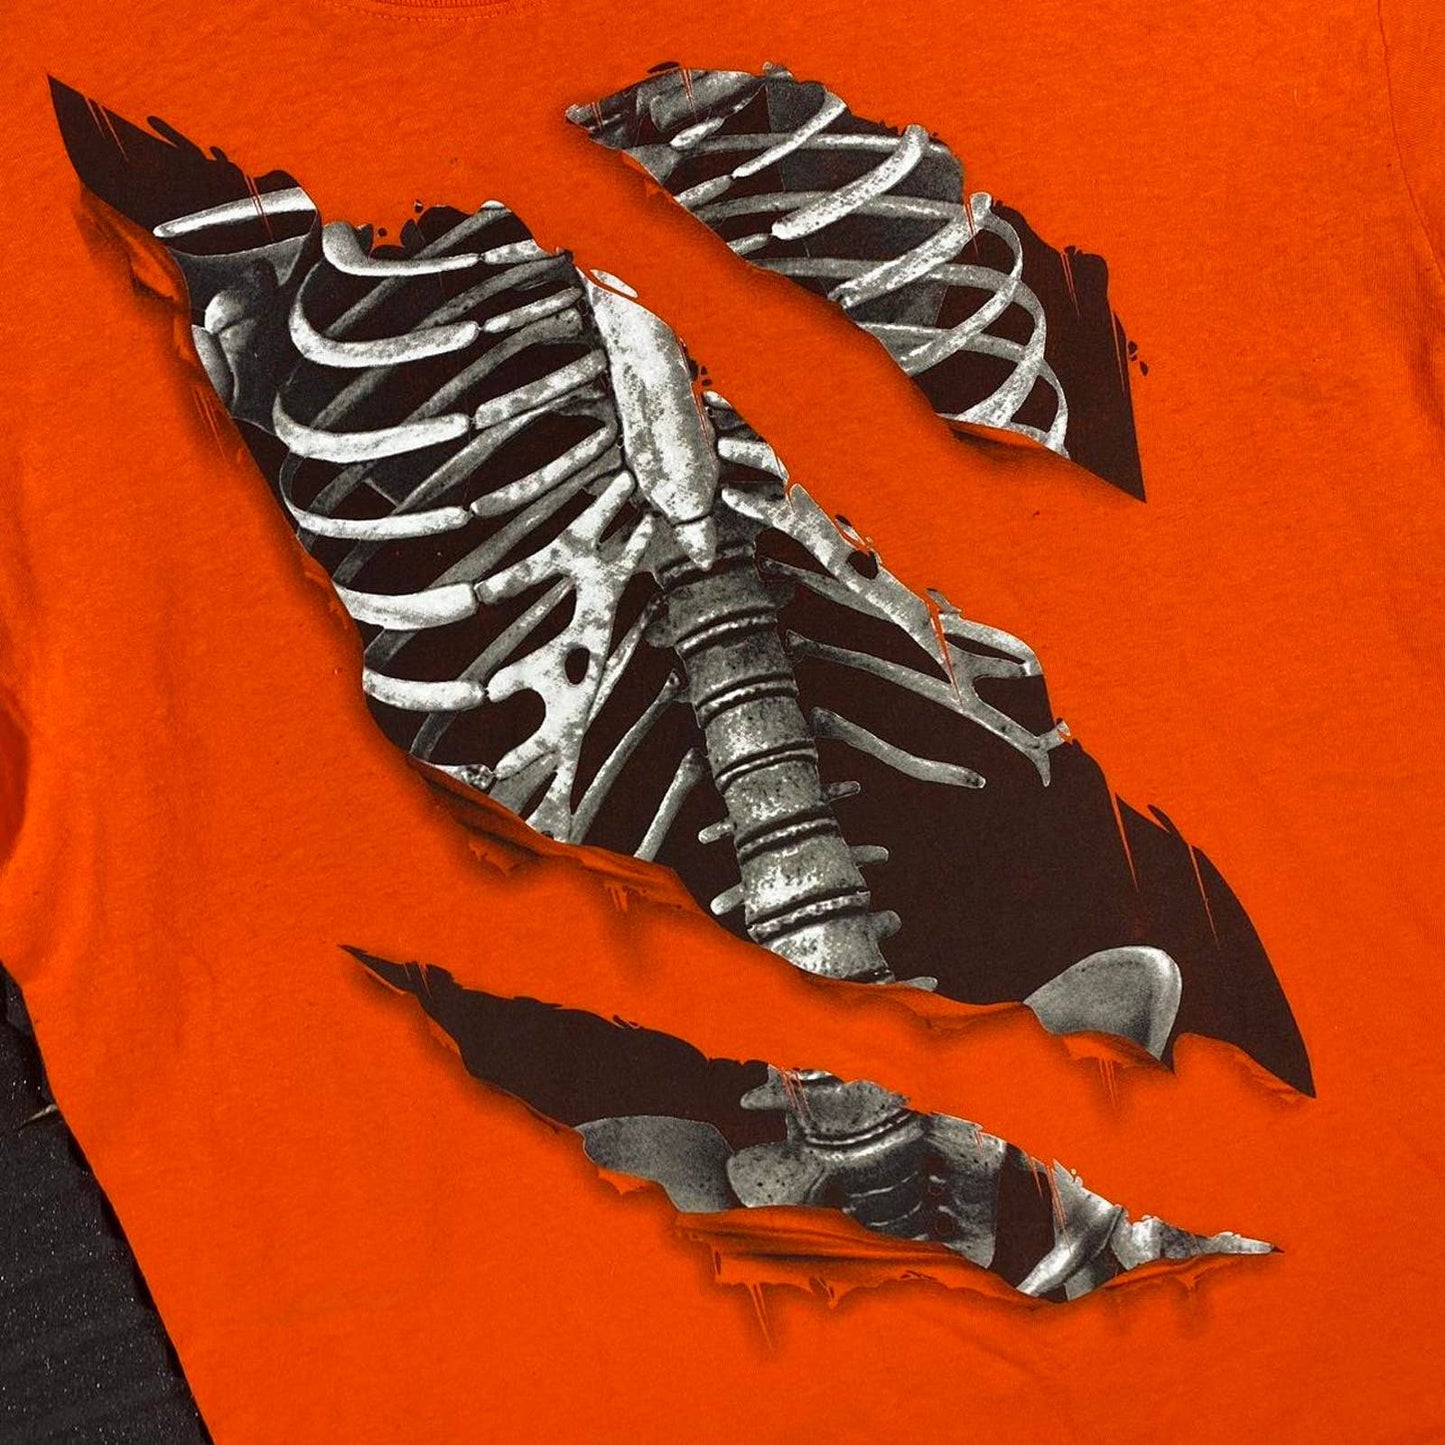 (XL) Skeleton T-Shirt